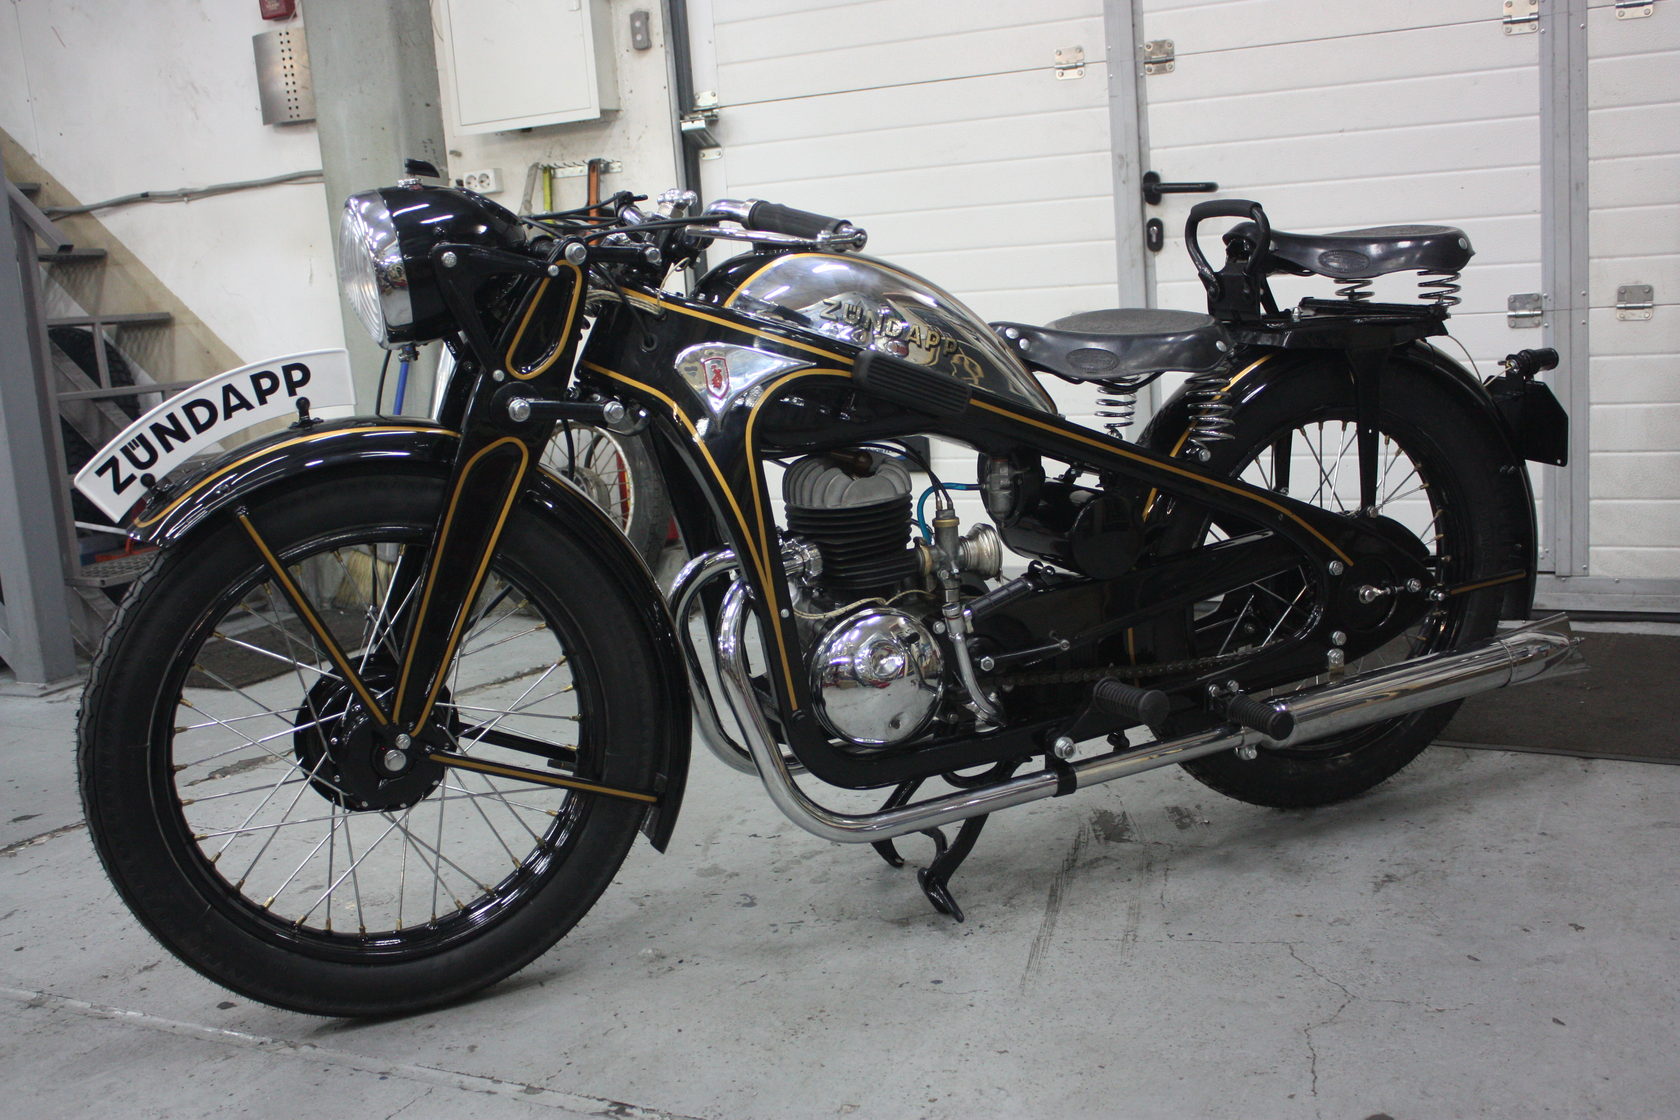 Ретро мотоцикл Зундапп д200 1932